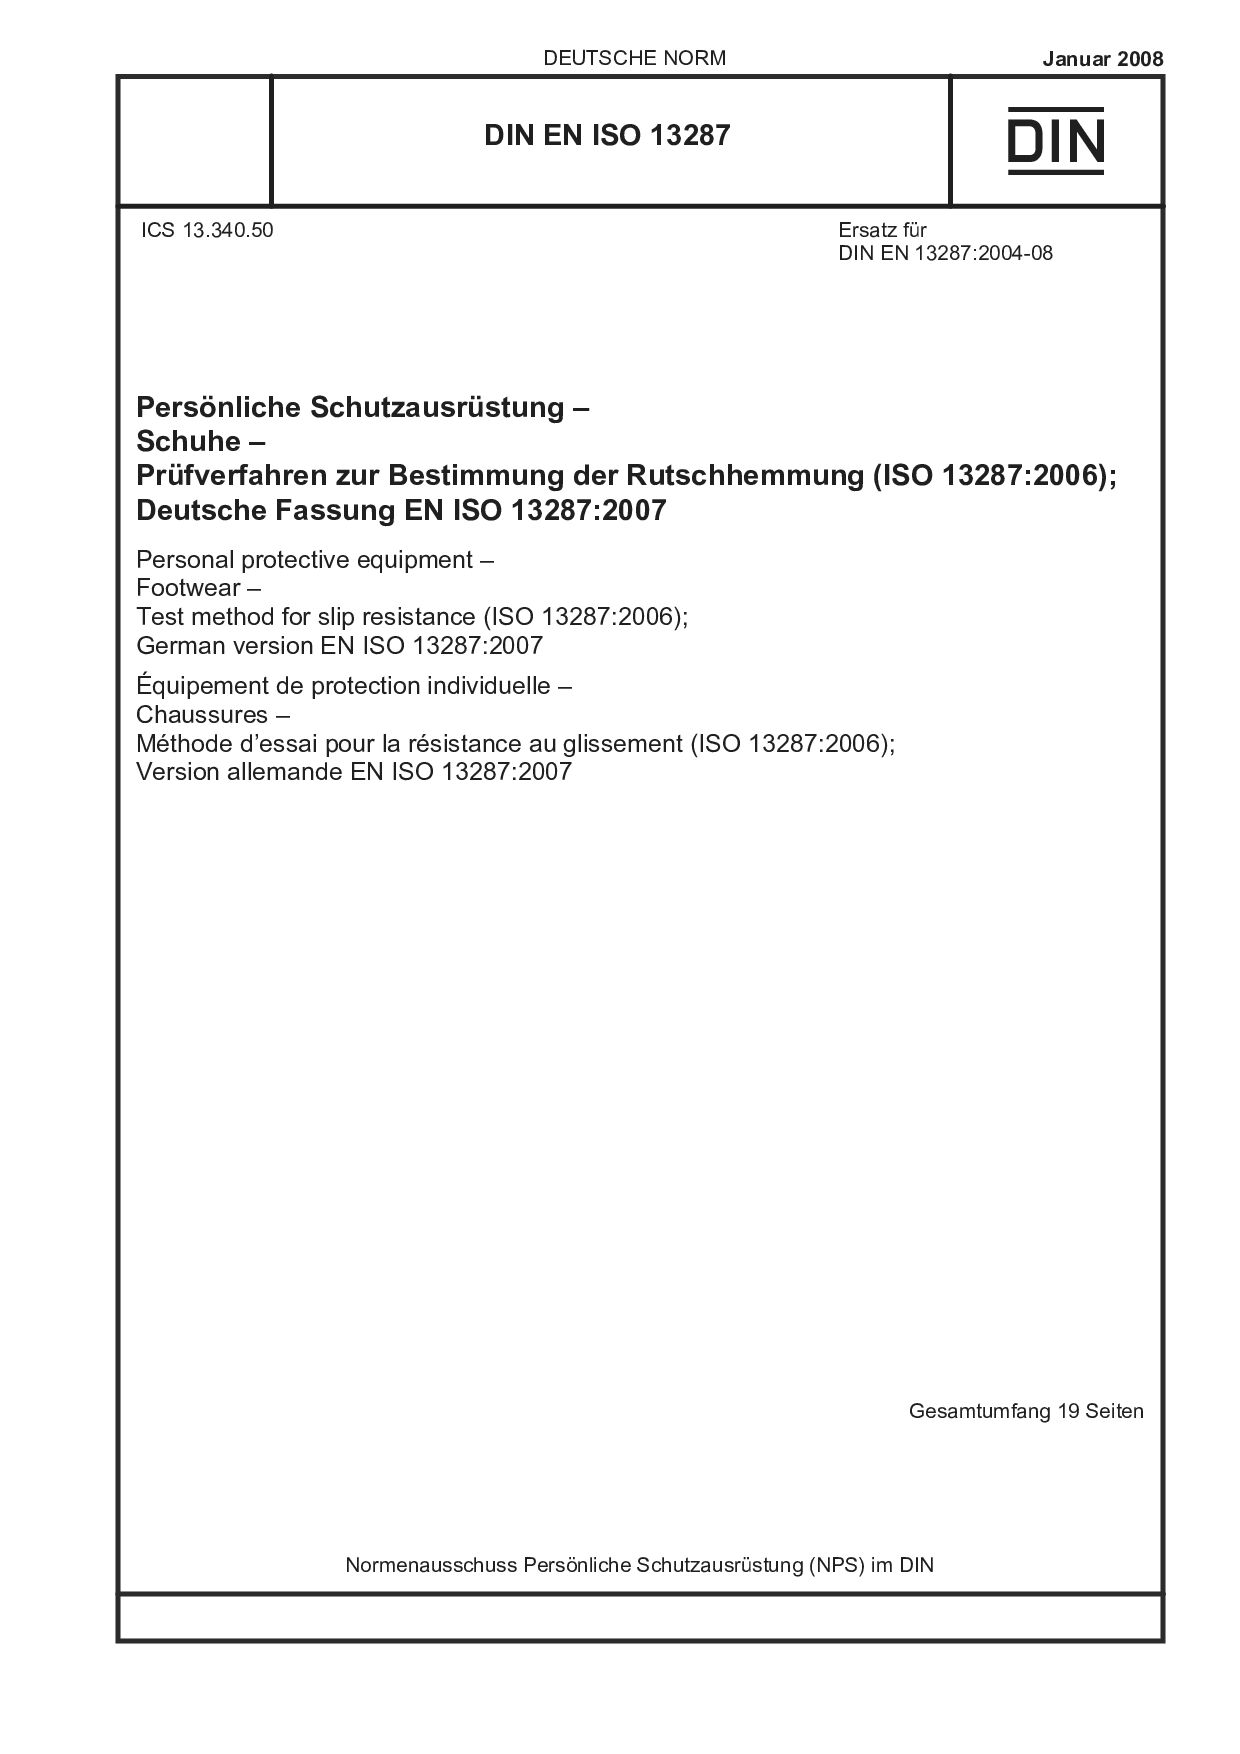 DIN EN ISO 13287:2008封面图